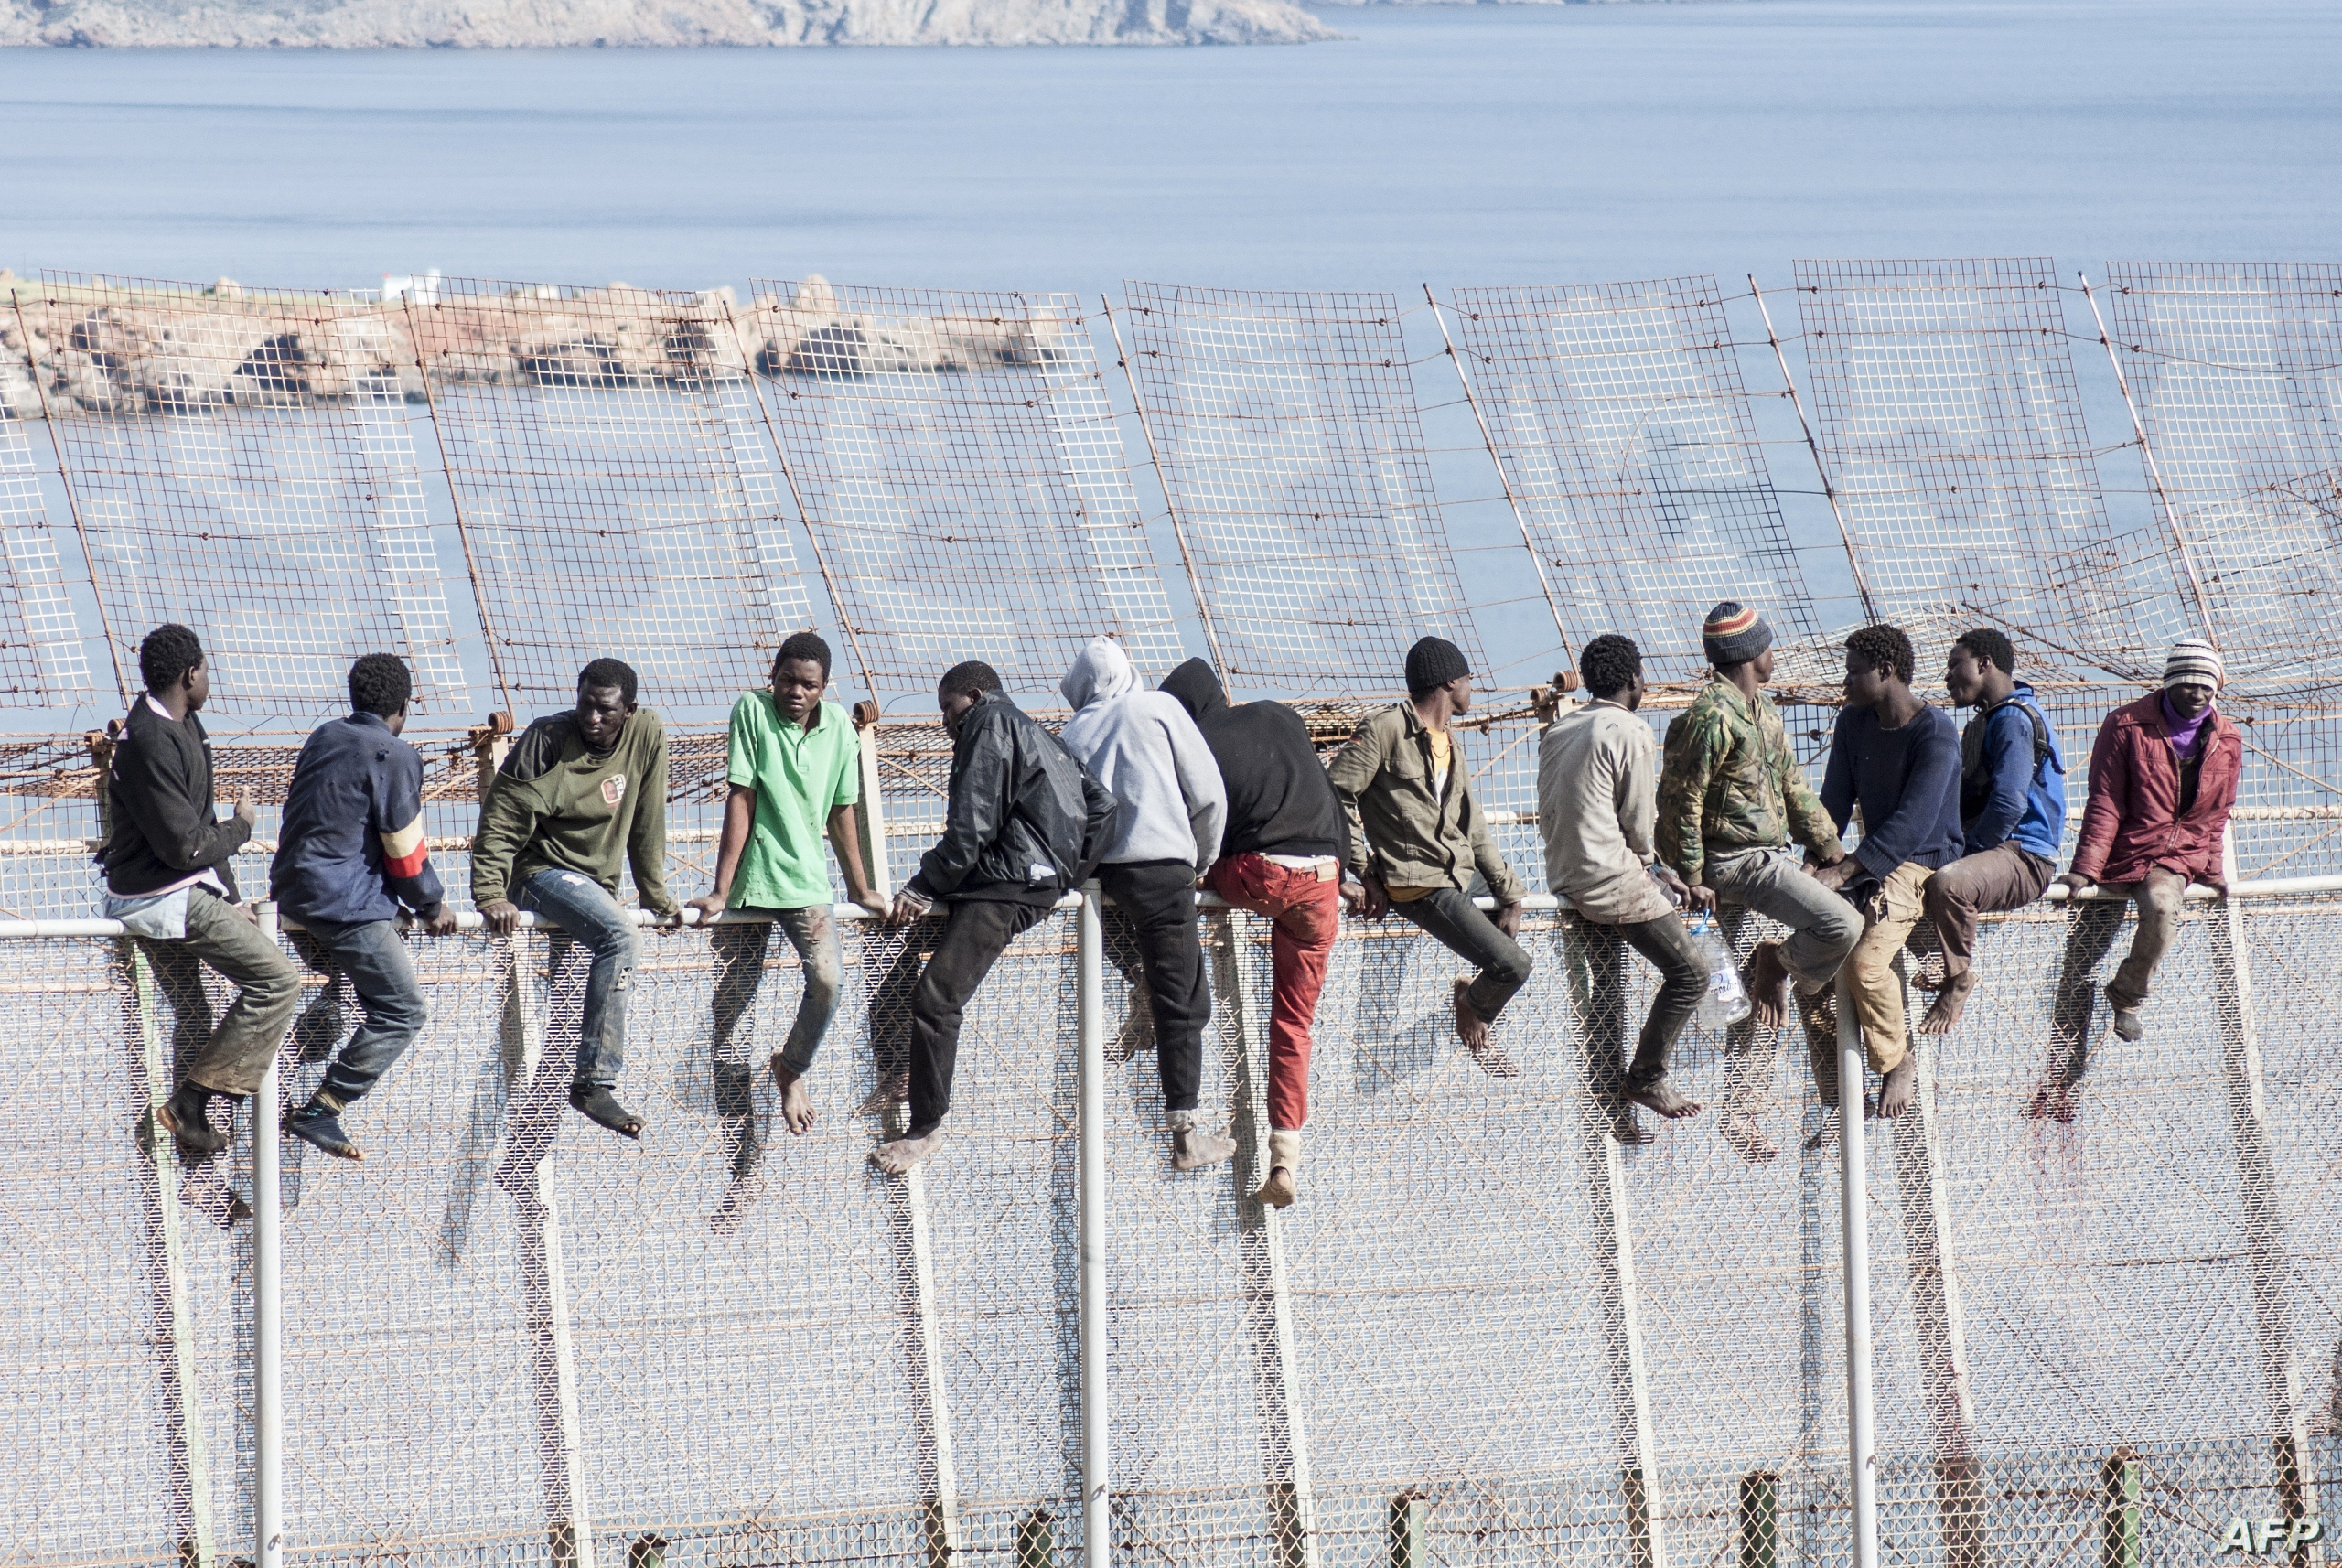 الاتحاد الأوروبي يرفع دعم المغرب لمواجهة الهجرة..وخبير: غير كاف